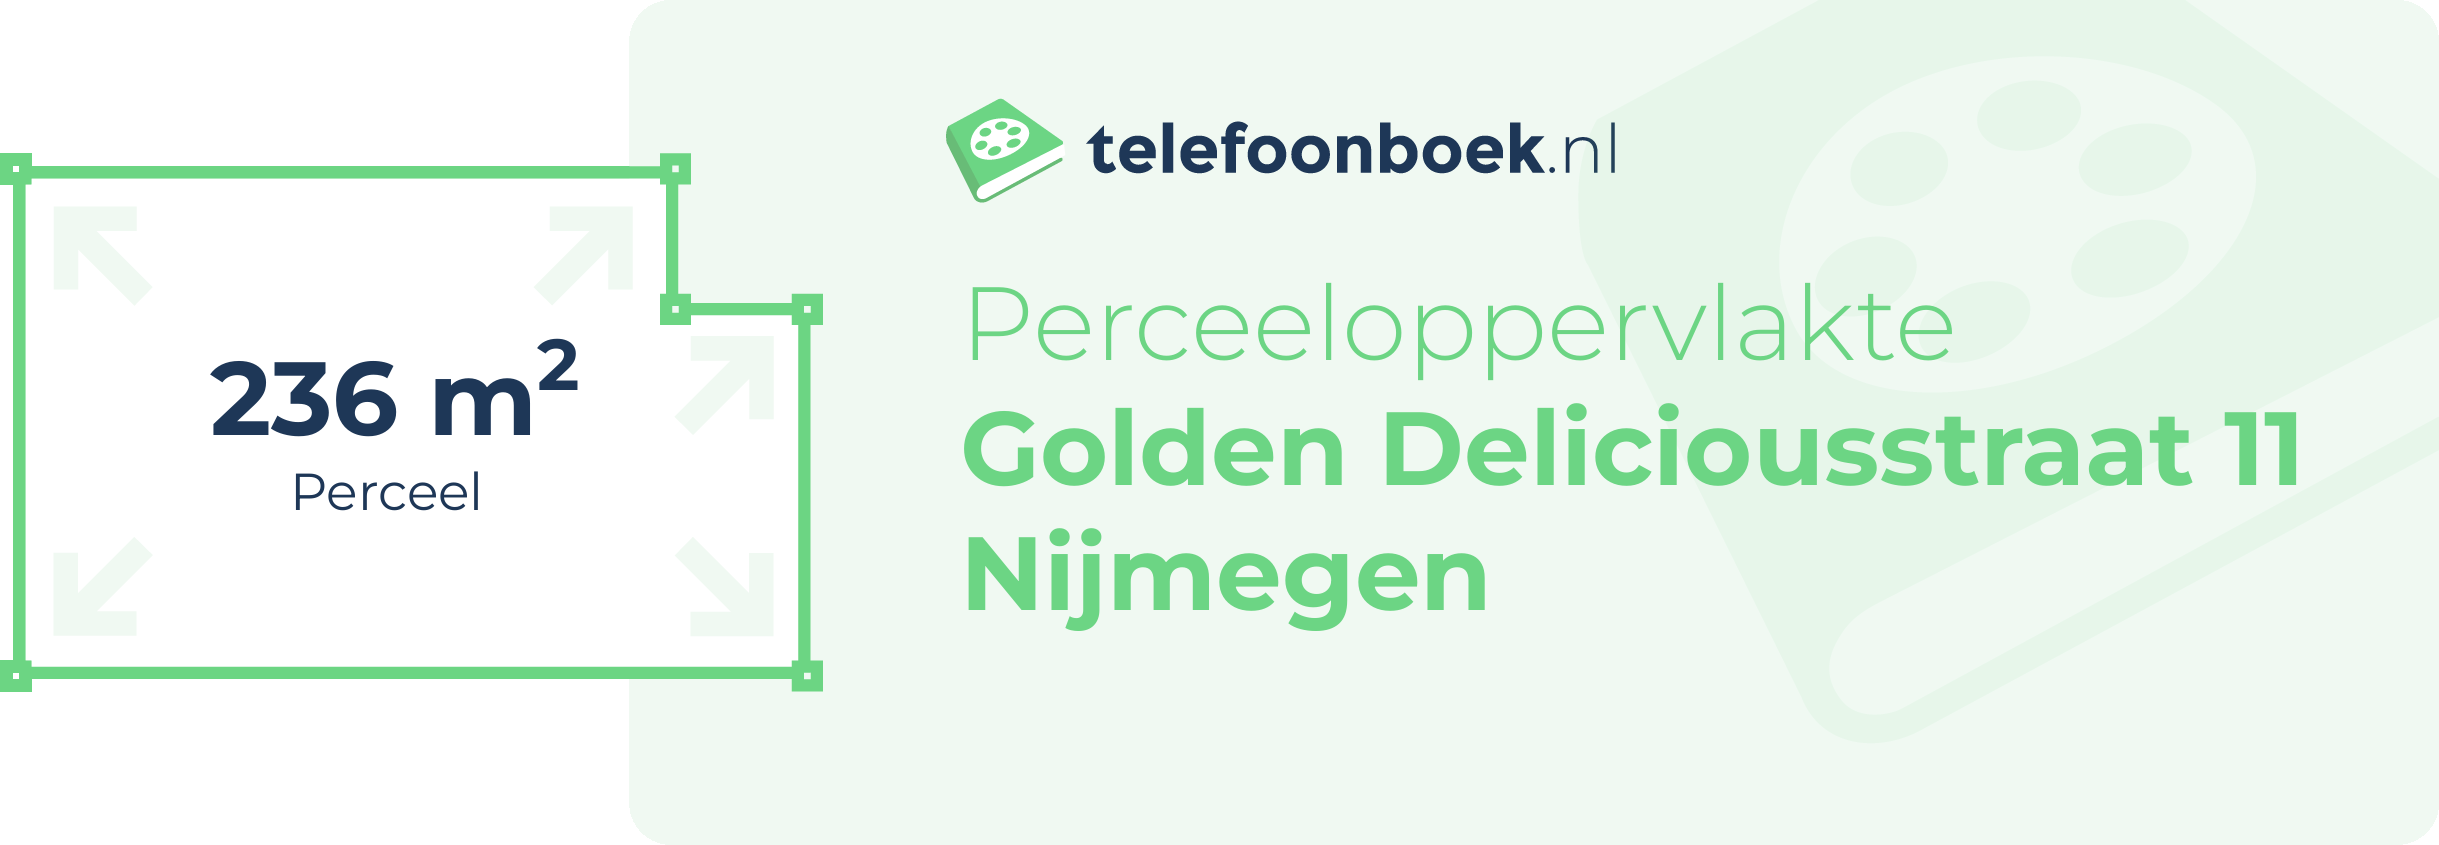 Perceeloppervlakte Golden Deliciousstraat 11 Nijmegen